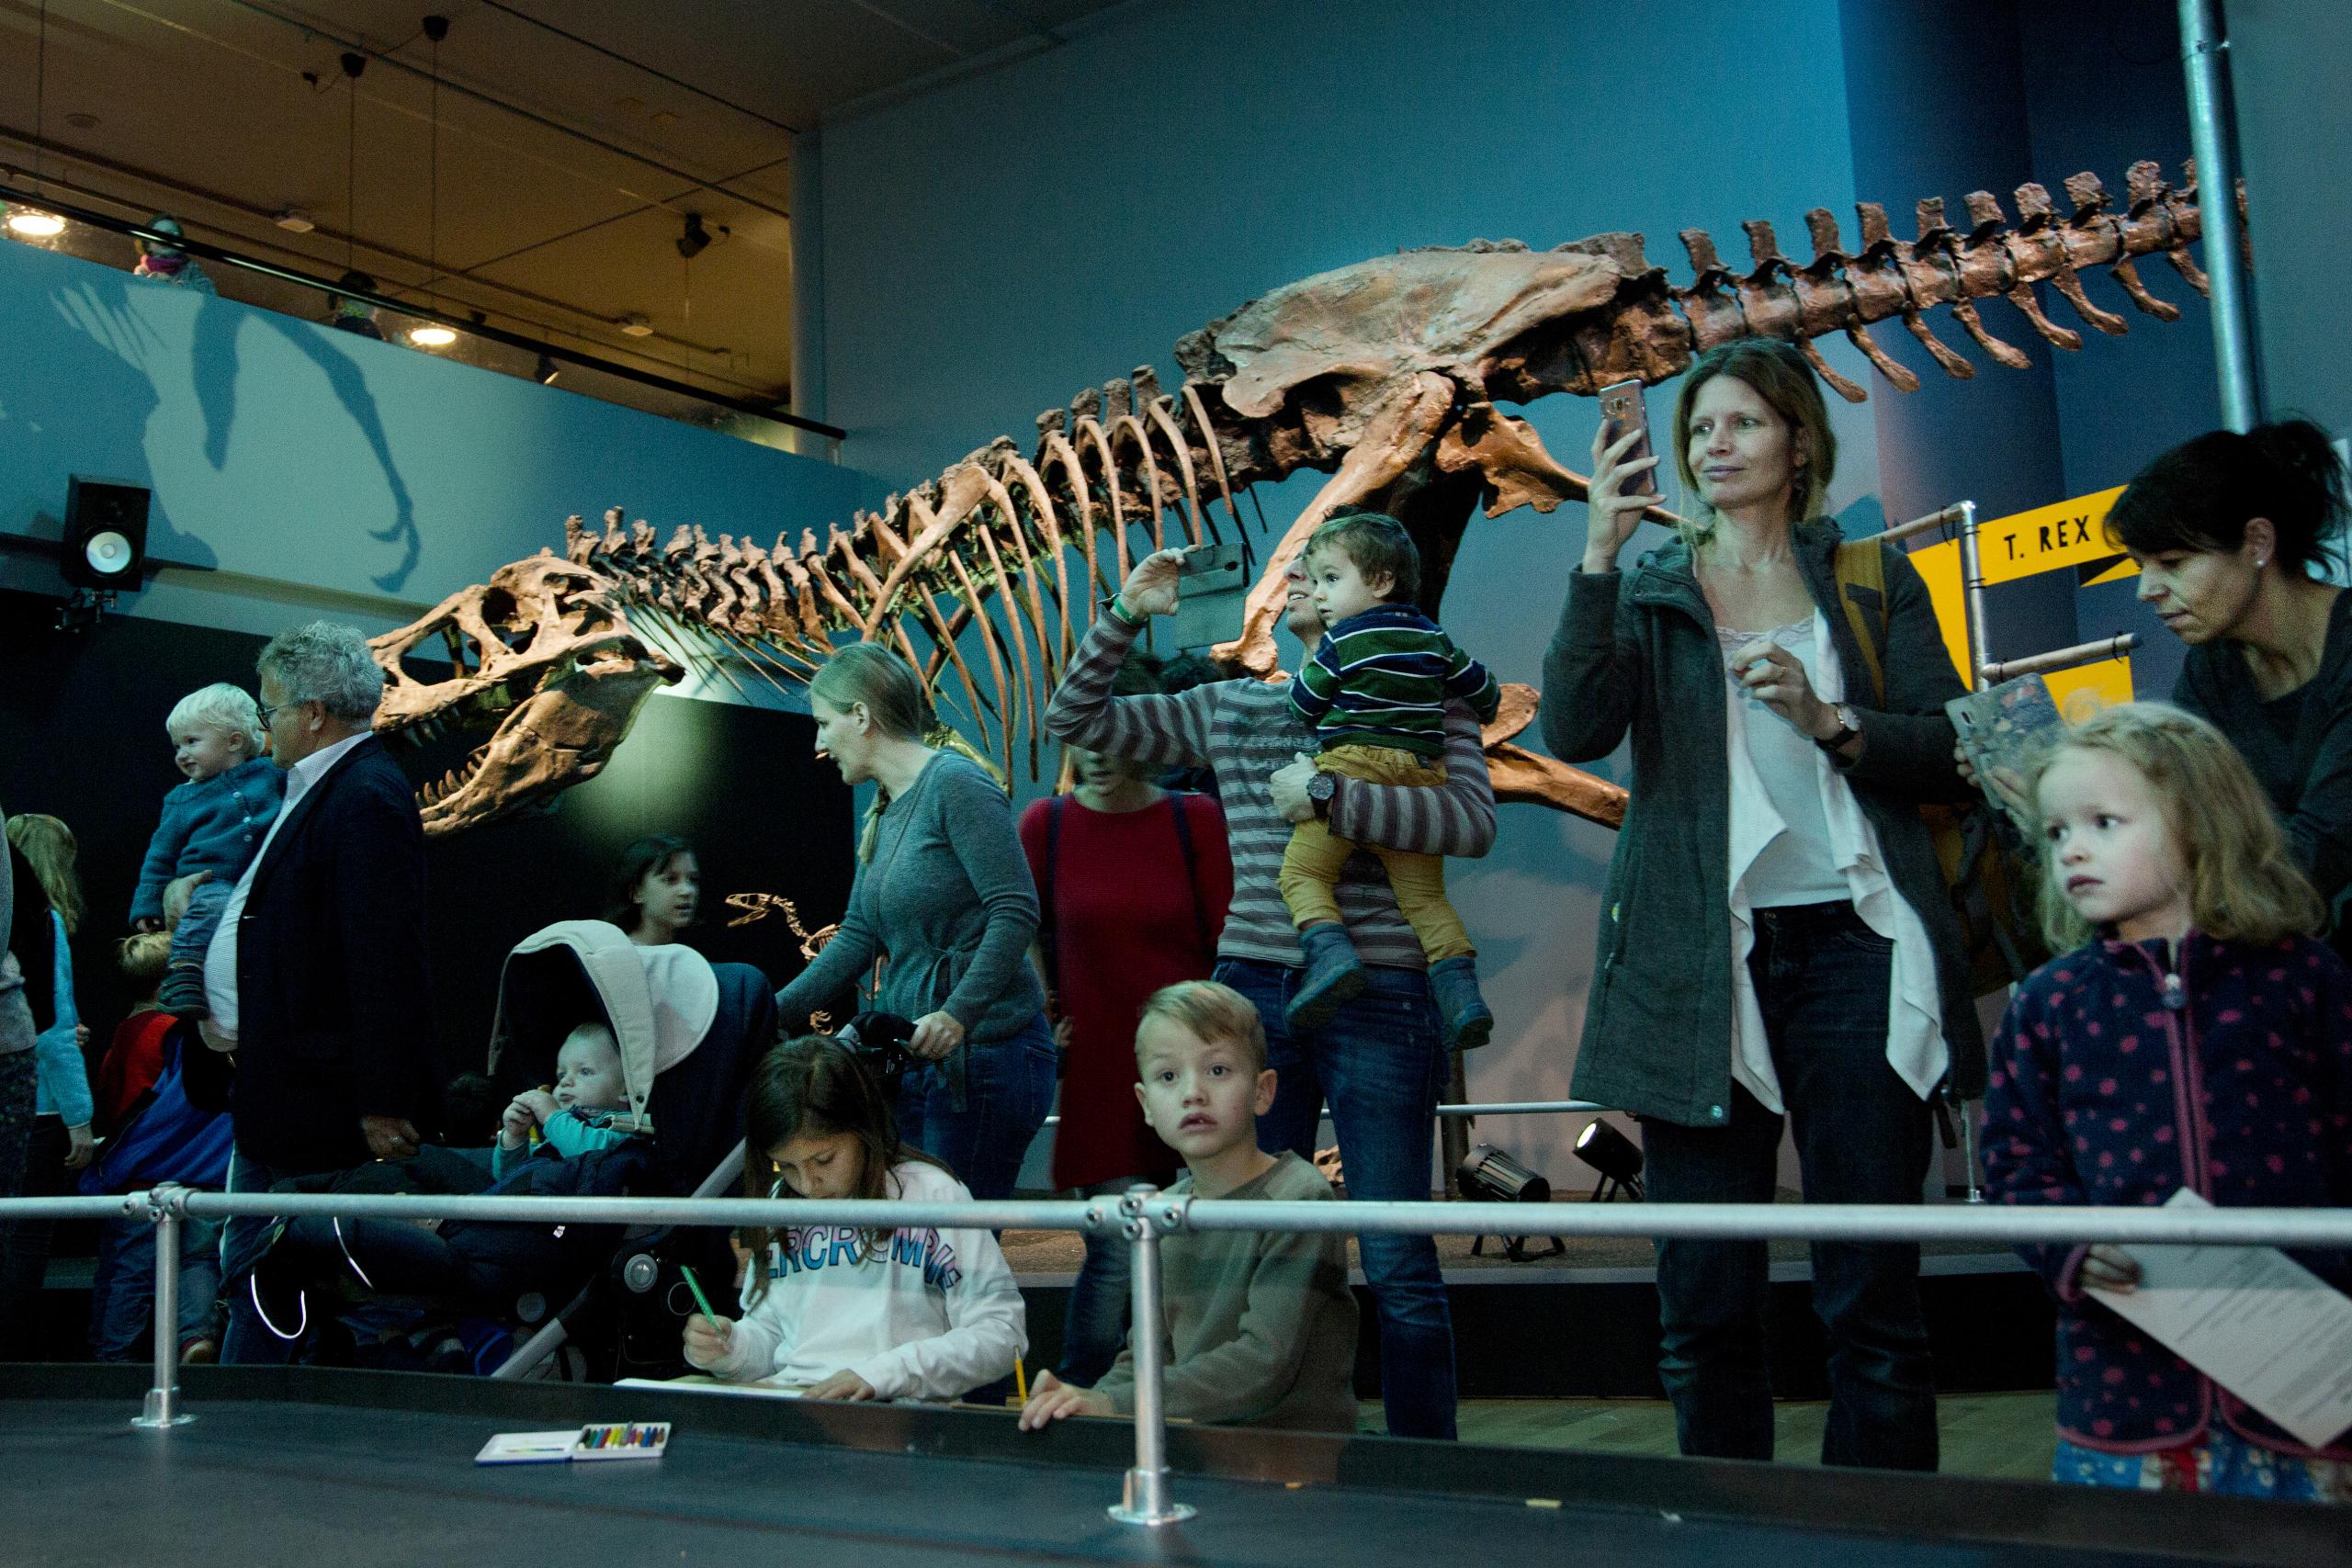 Grosse und kleine Gäste in der Sonderausstellung «T. rex - Kennen wir uns»